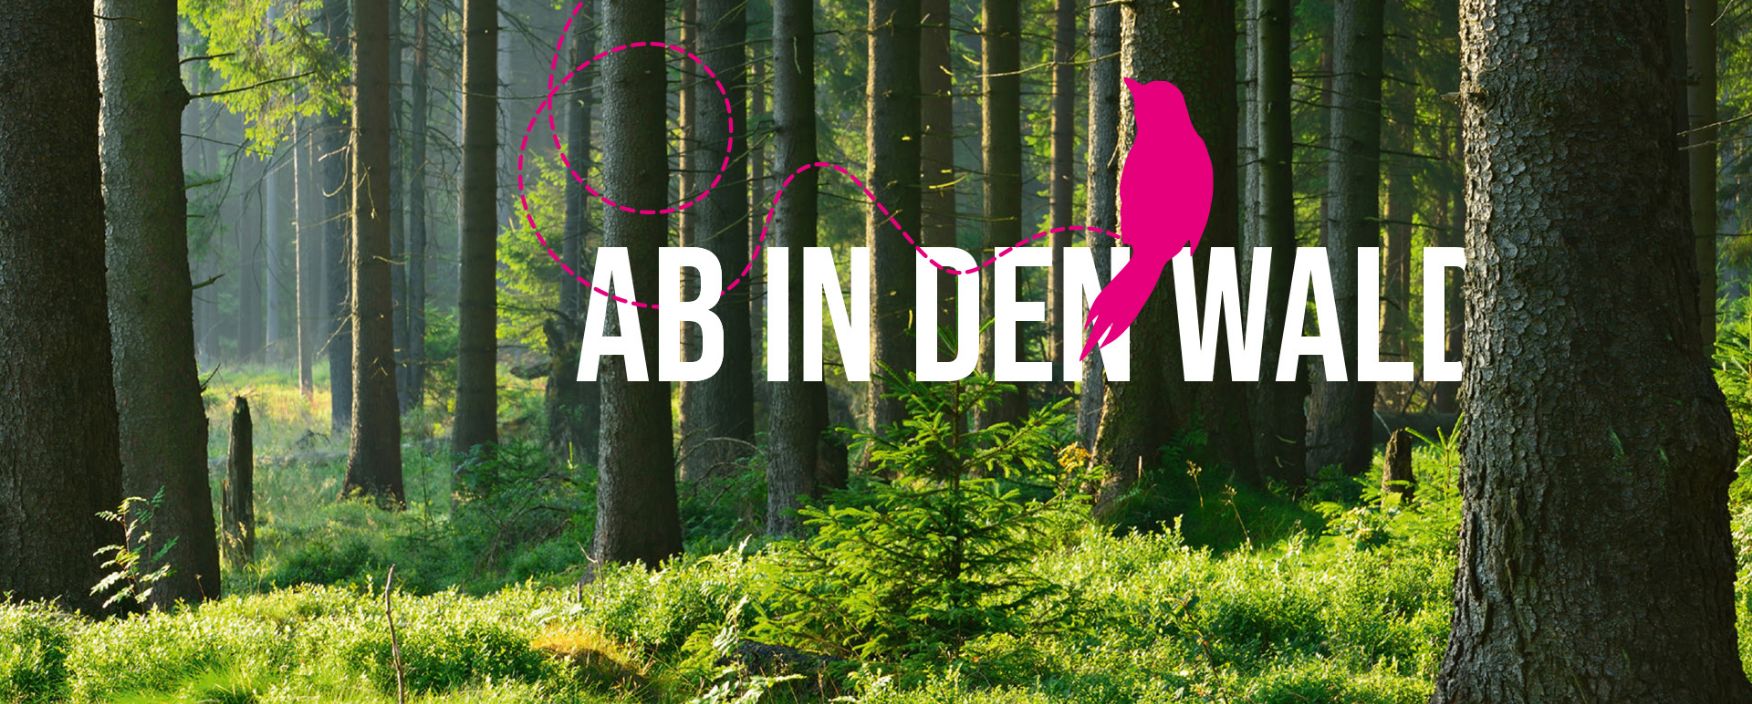 Wald mit Text "Ab in den Wald" und ein pinker Vogel